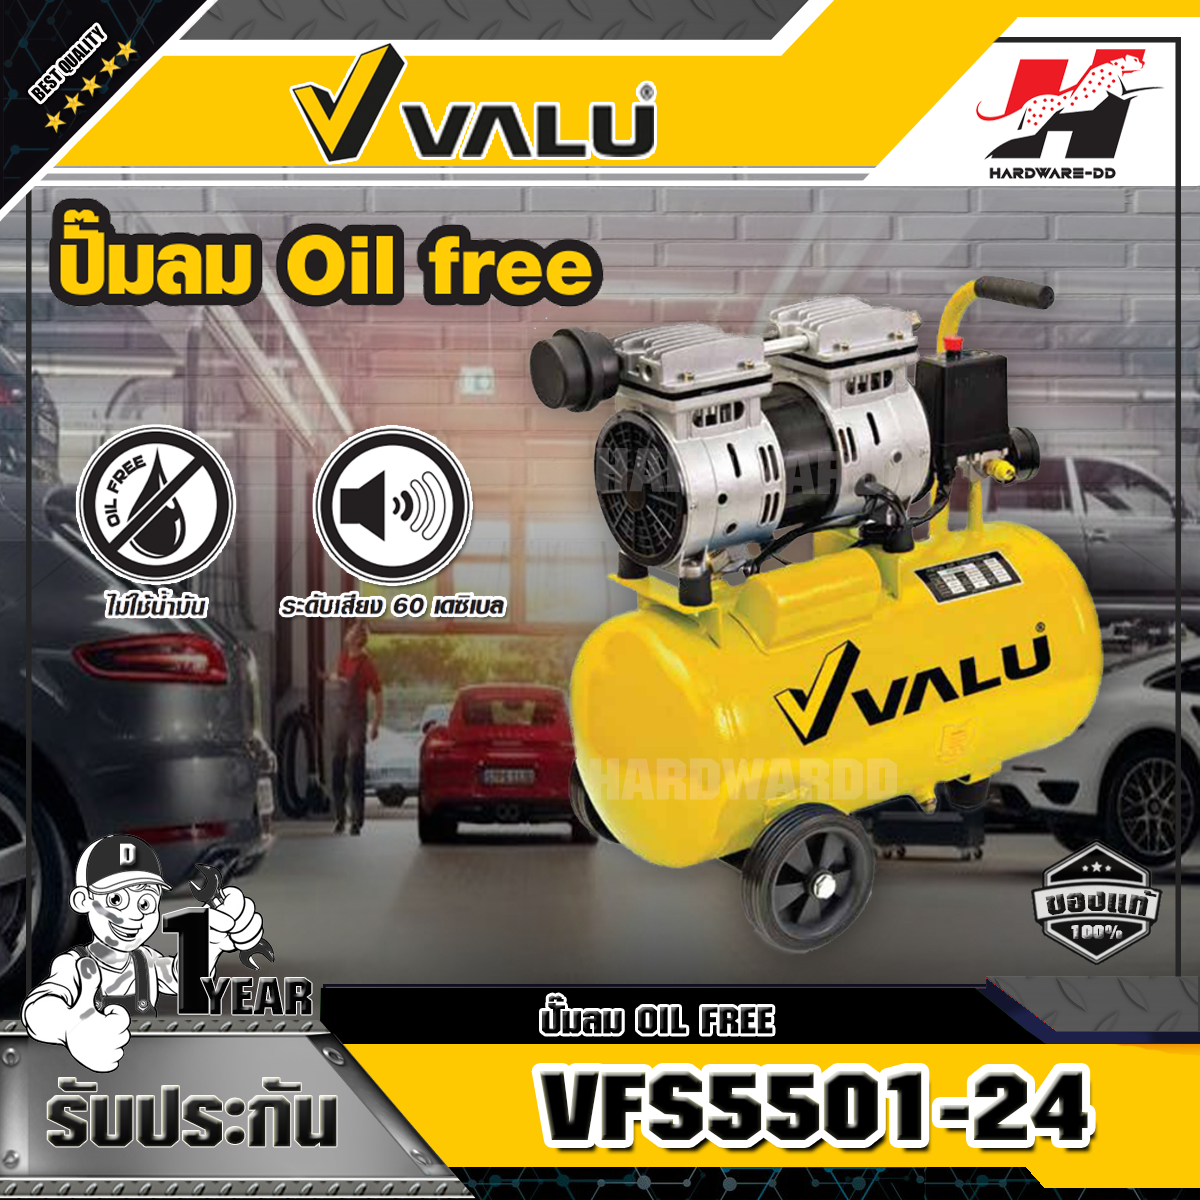 VALU รุ่น VFS5501-24 ปั๊มลมออยล์ฟรี แวลู ปั๊มลมแบบไร้น้ำมัน (OIL FREE) กำลังมอเตอร์ 0.7 แรงม้า (500 วัตต์) ขนาดถังลม 24 ลิตร